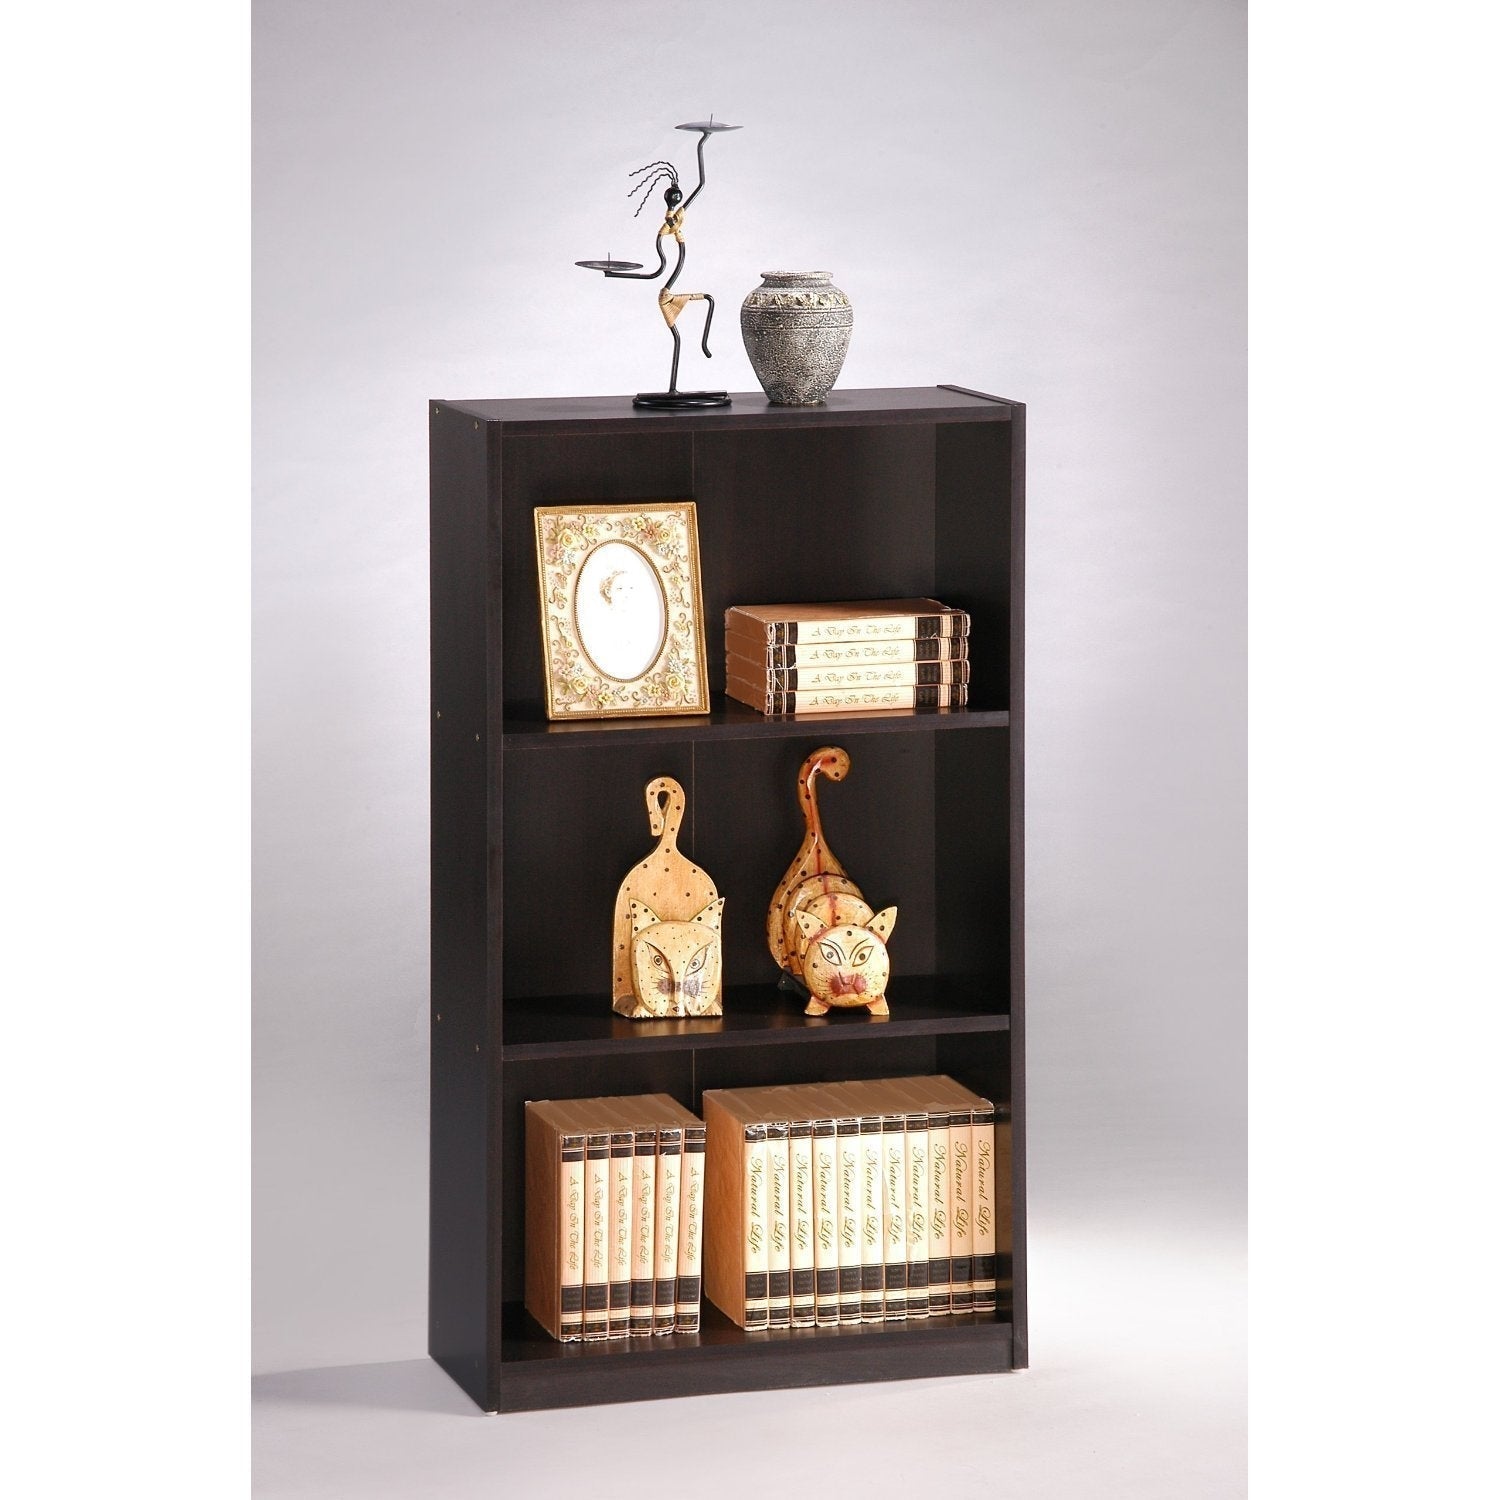 Office > Bookcases - 3-Tier Bookcase Storage Shelves In Espresso Finish